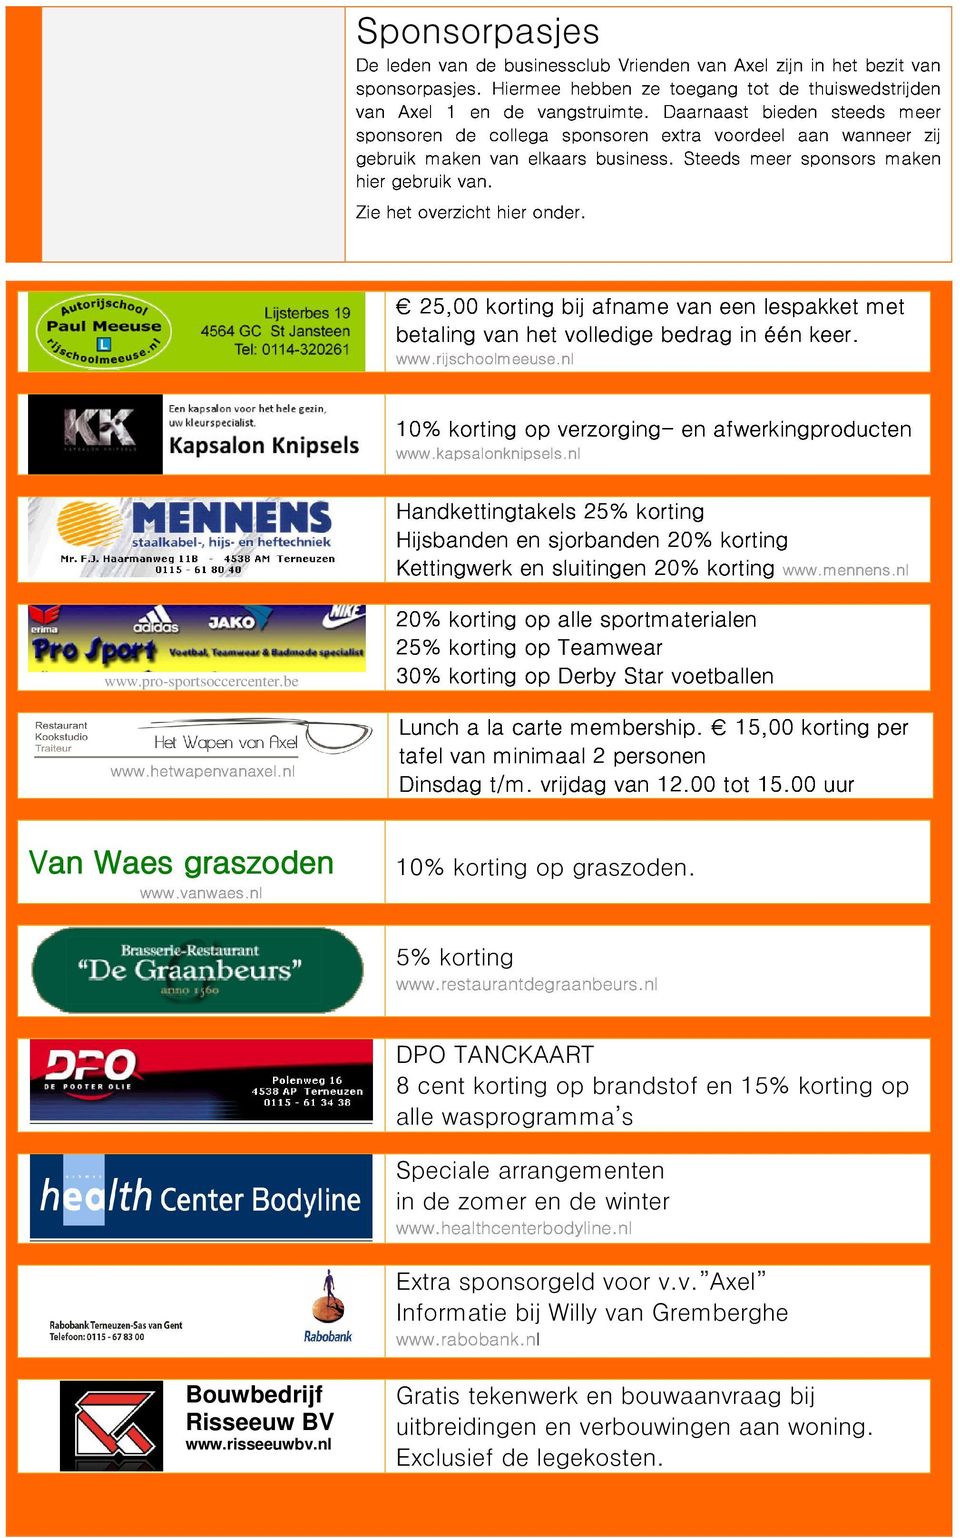 extra Steeds voorel meer aan sponsors wanneer mak zij betaling www.rijschoolmeeuse.nl 25,00 korting het bij volledige afname bedrag e in lespakket één keer. met 10% www.kapsalonknipsels.